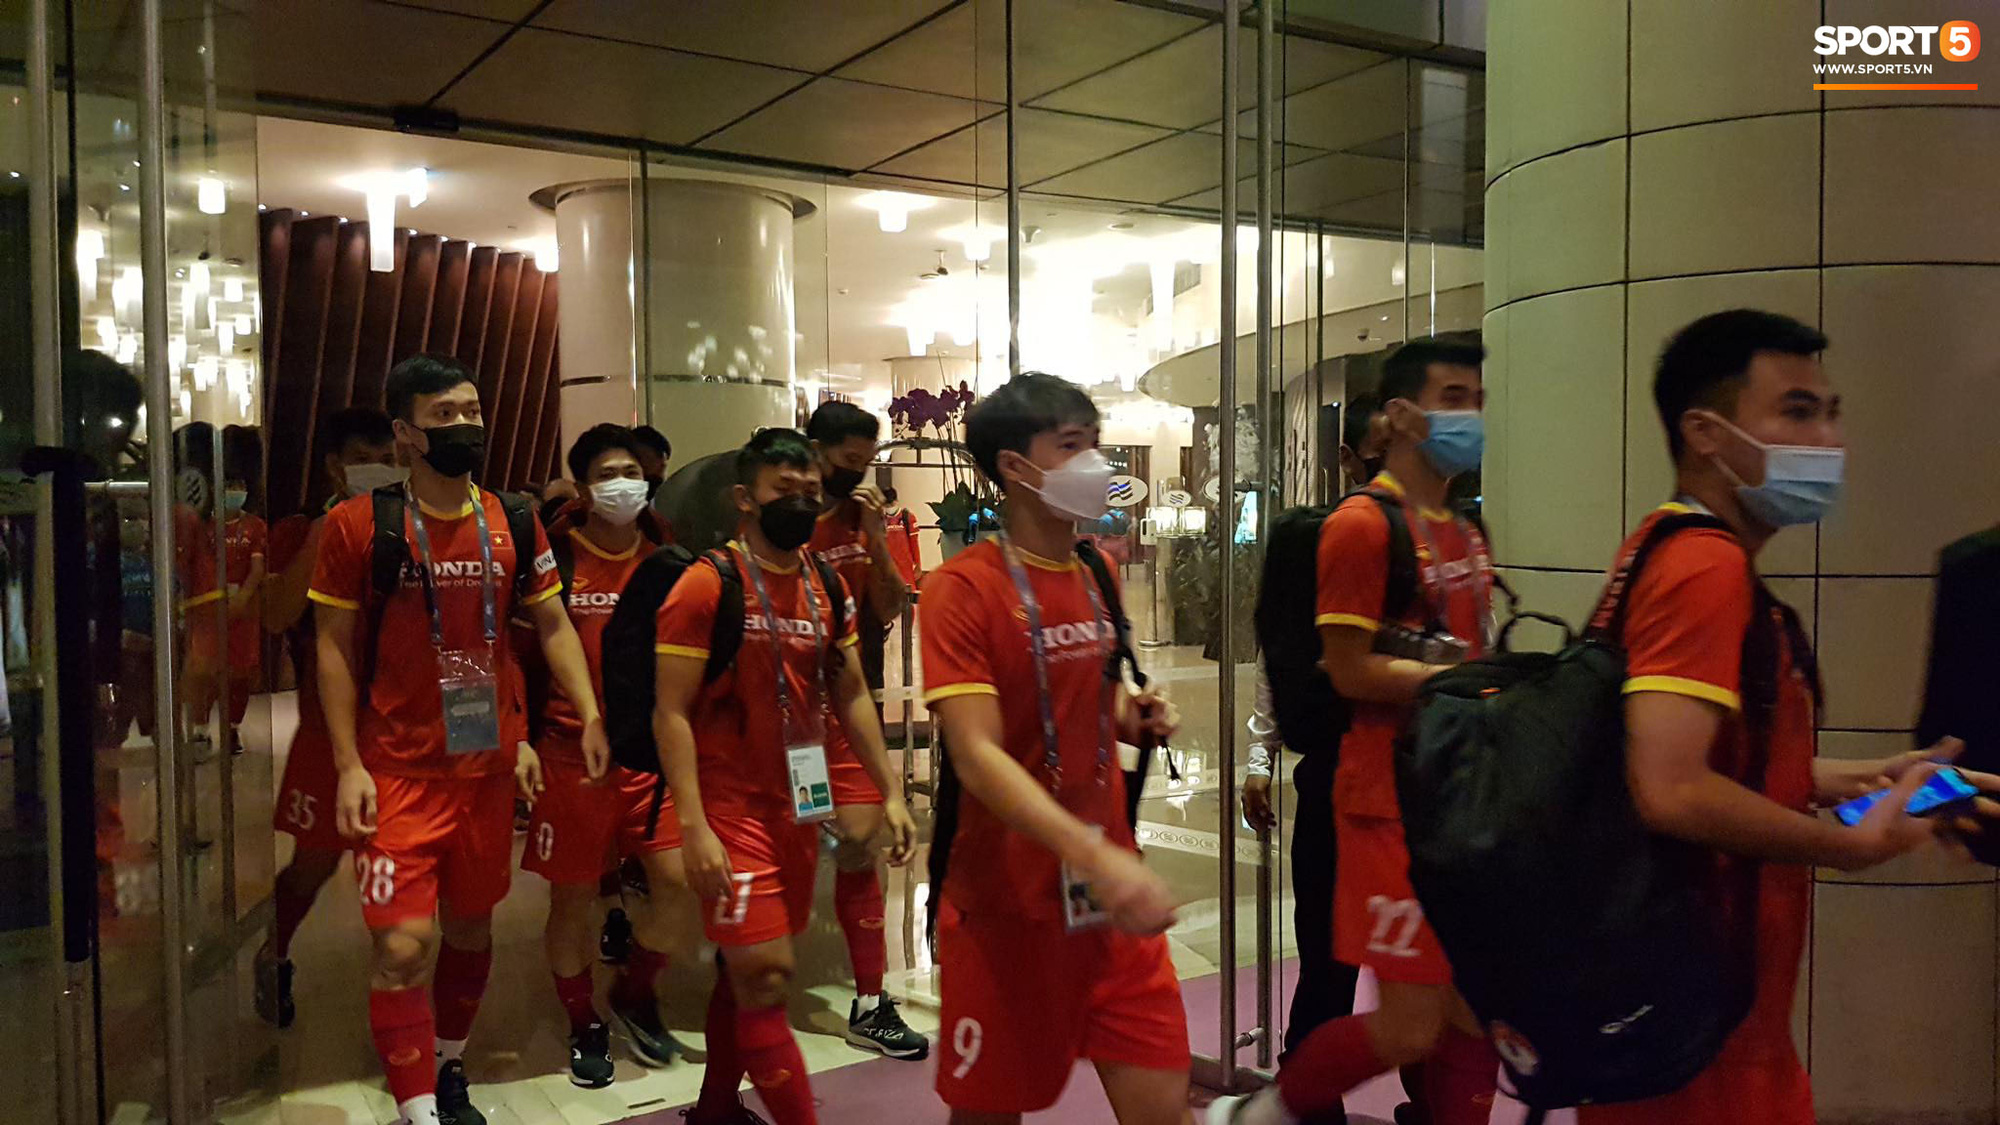 [Trực tiếp từ UAE] Buổi tập đầu tiên của tuyển Việt Nam sau trận gặp Indonesia: Tuấn Anh, Văn Toàn cùng có mặt - Ảnh 13.